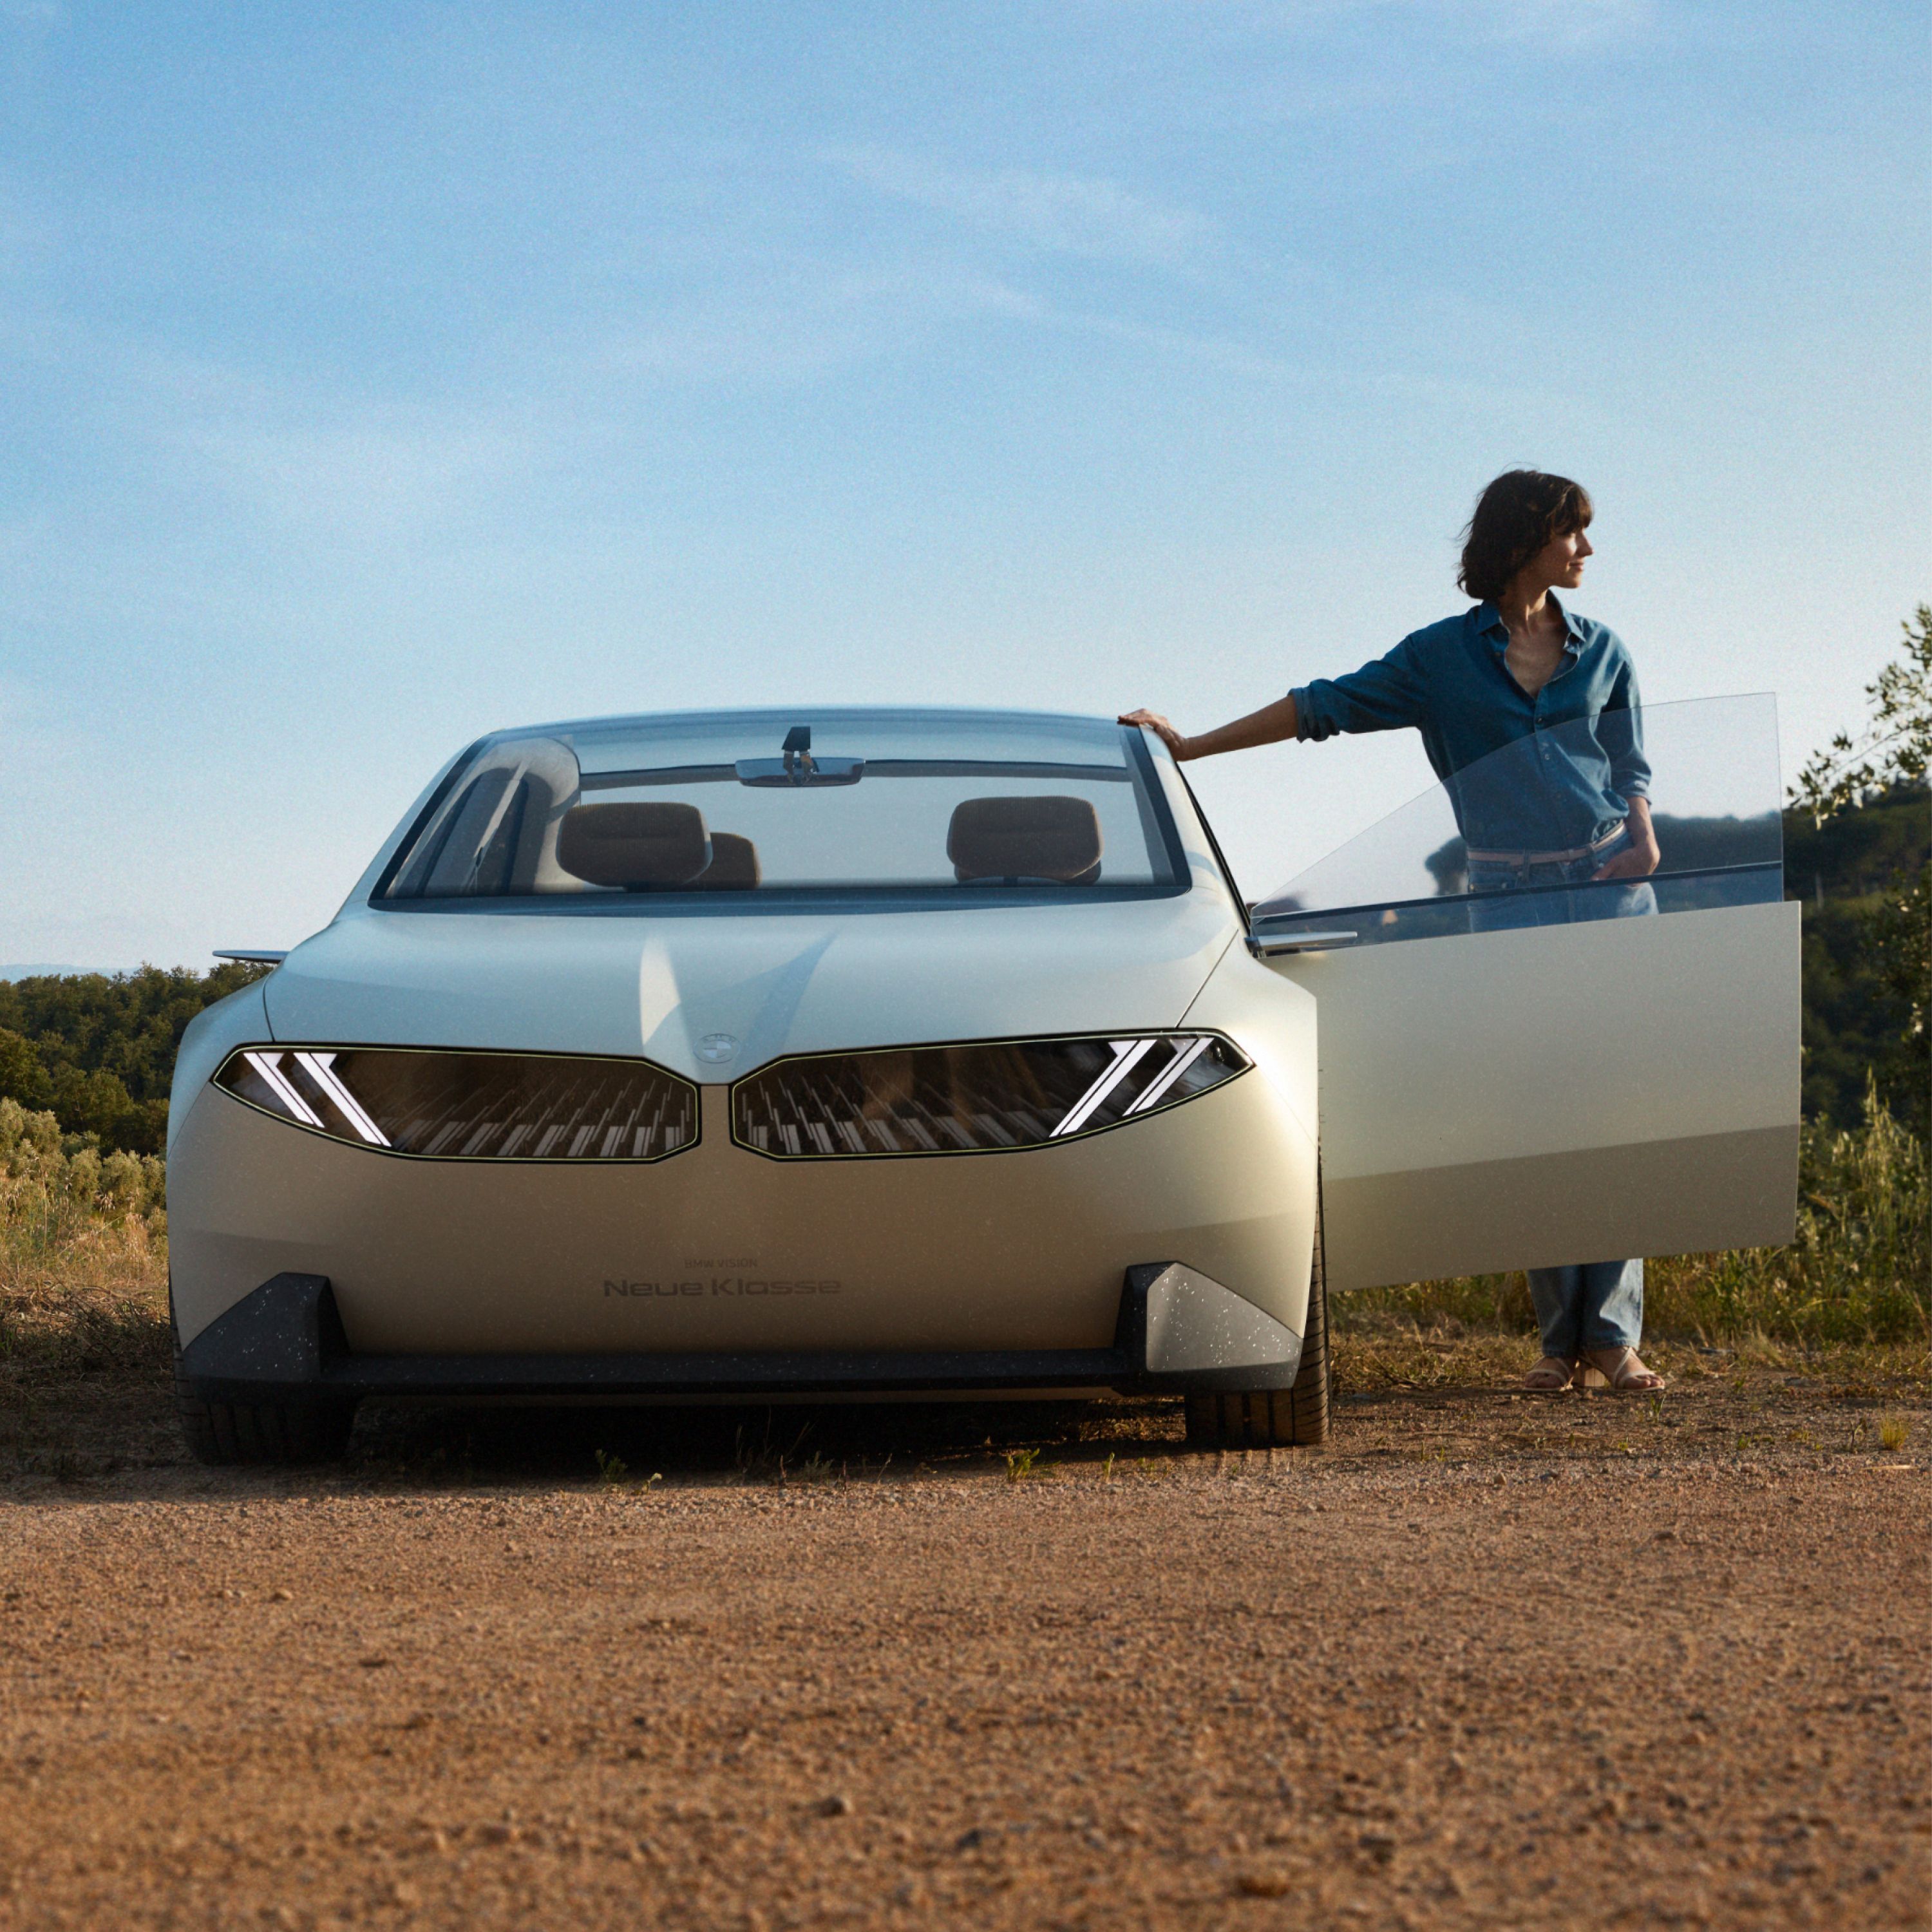 BMW Vision Neue Klasse koncepcióautó 2023, külső, elölnézet, egy sivatagban álló, nyitott ajtajú autó egy nő társaságában